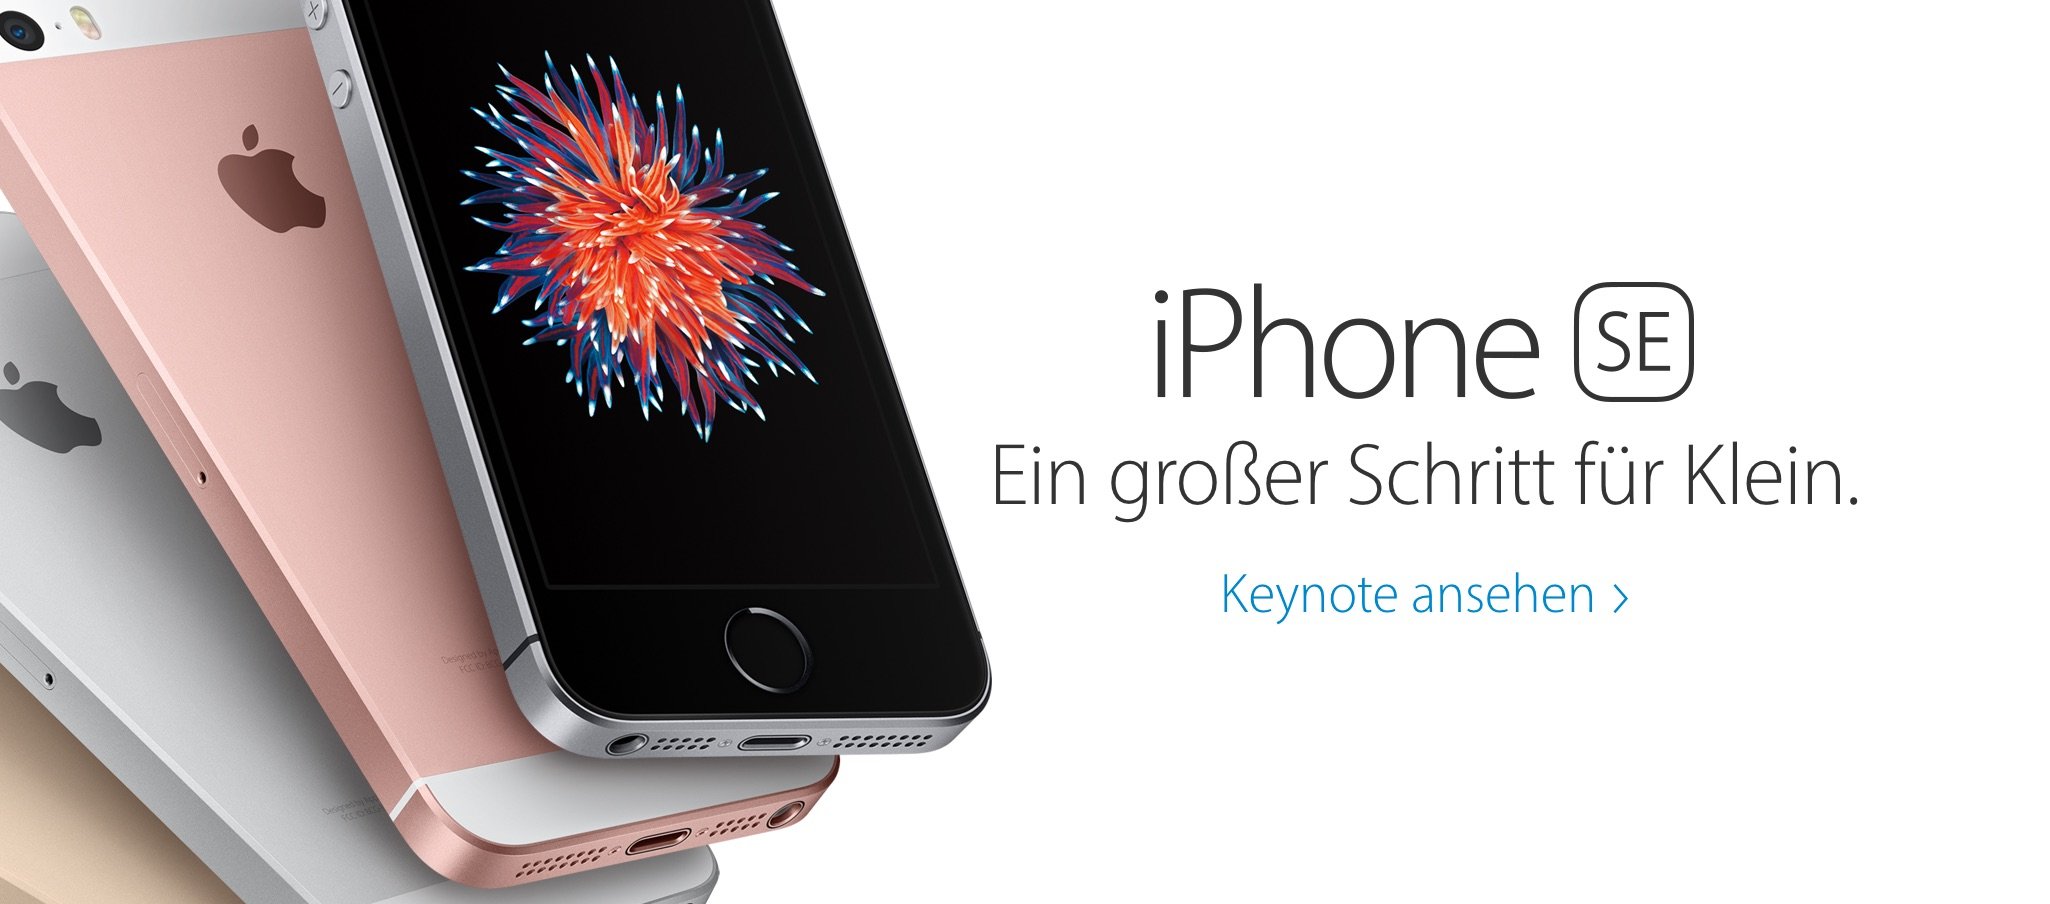 Euro Preise Deutschland für iPhone SE, iPad Pro, Apple Watch 1